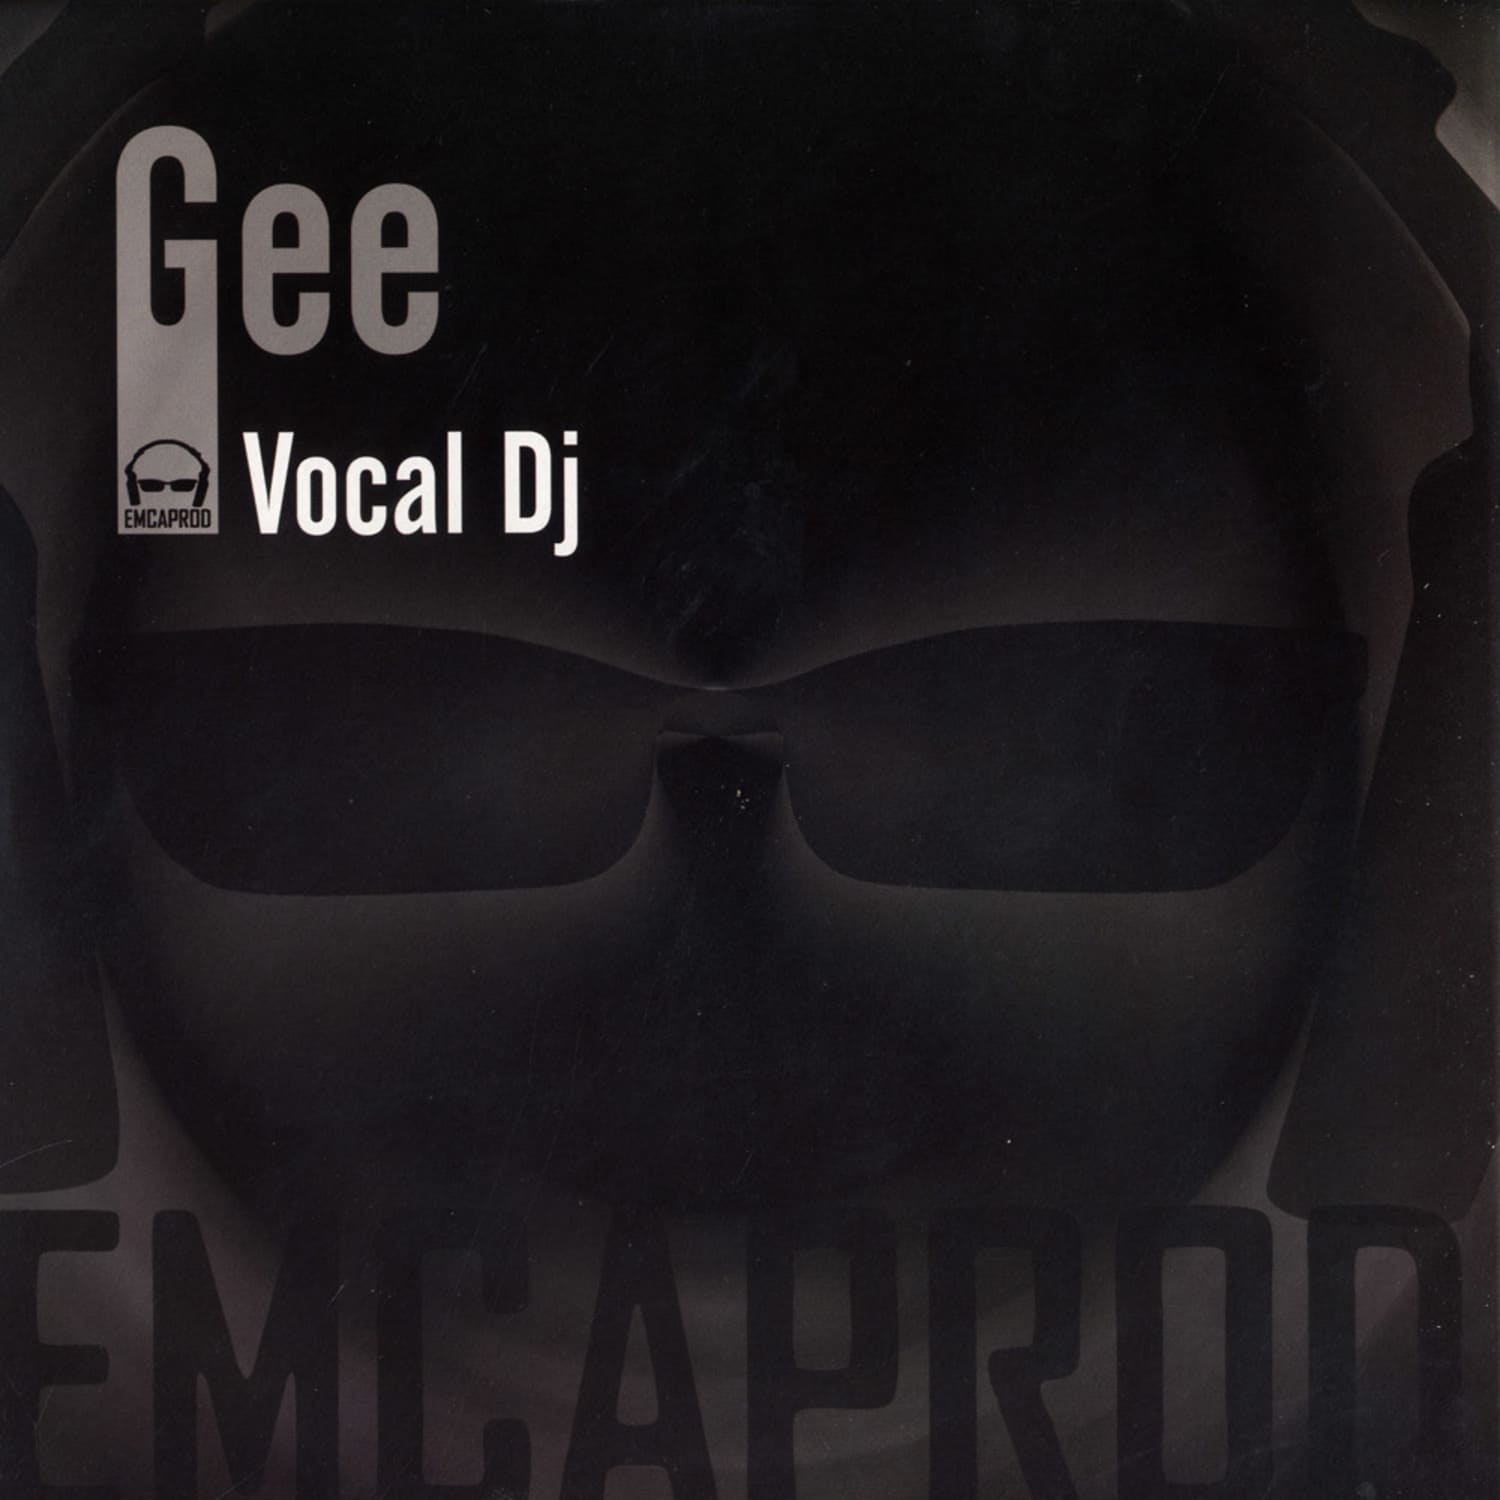 Gee - VOCAL DJ